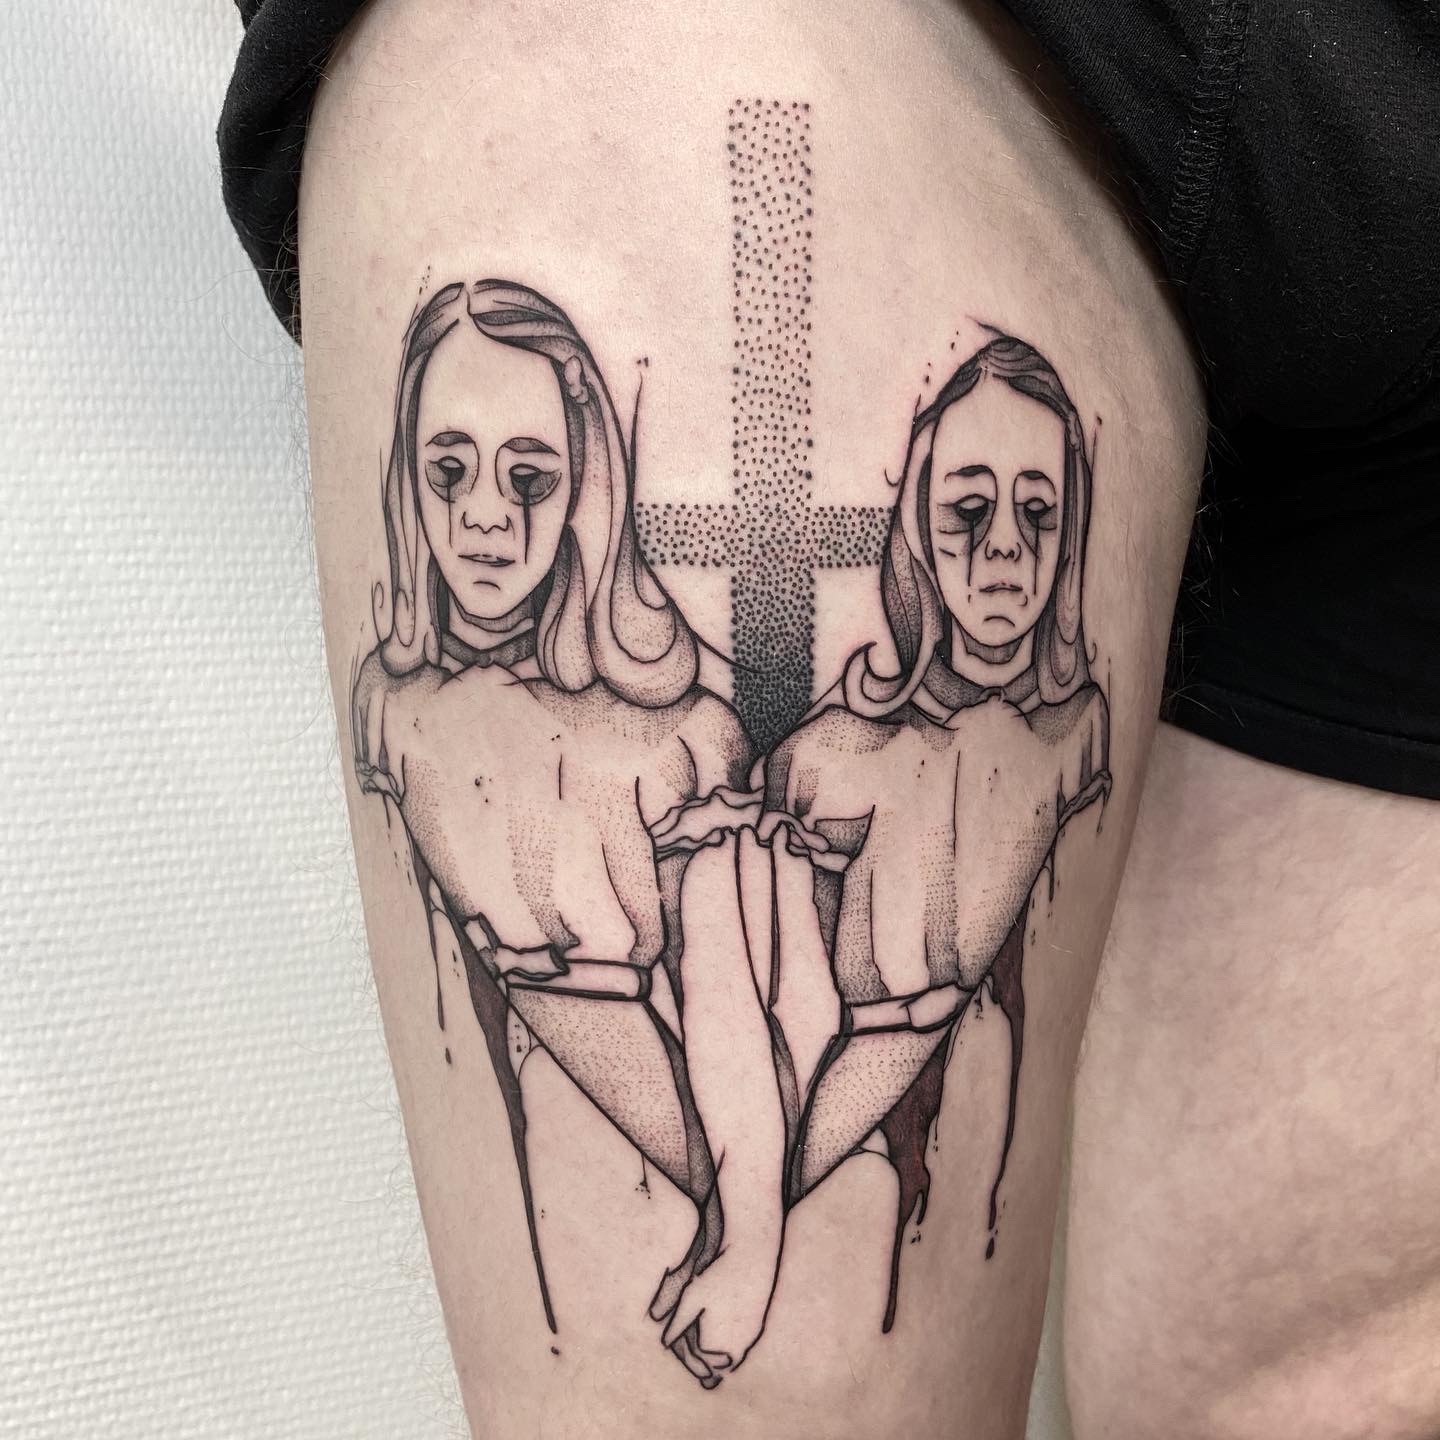 Alain/DotNine, artiste tatoueur de Bethune - tatouage evil twins